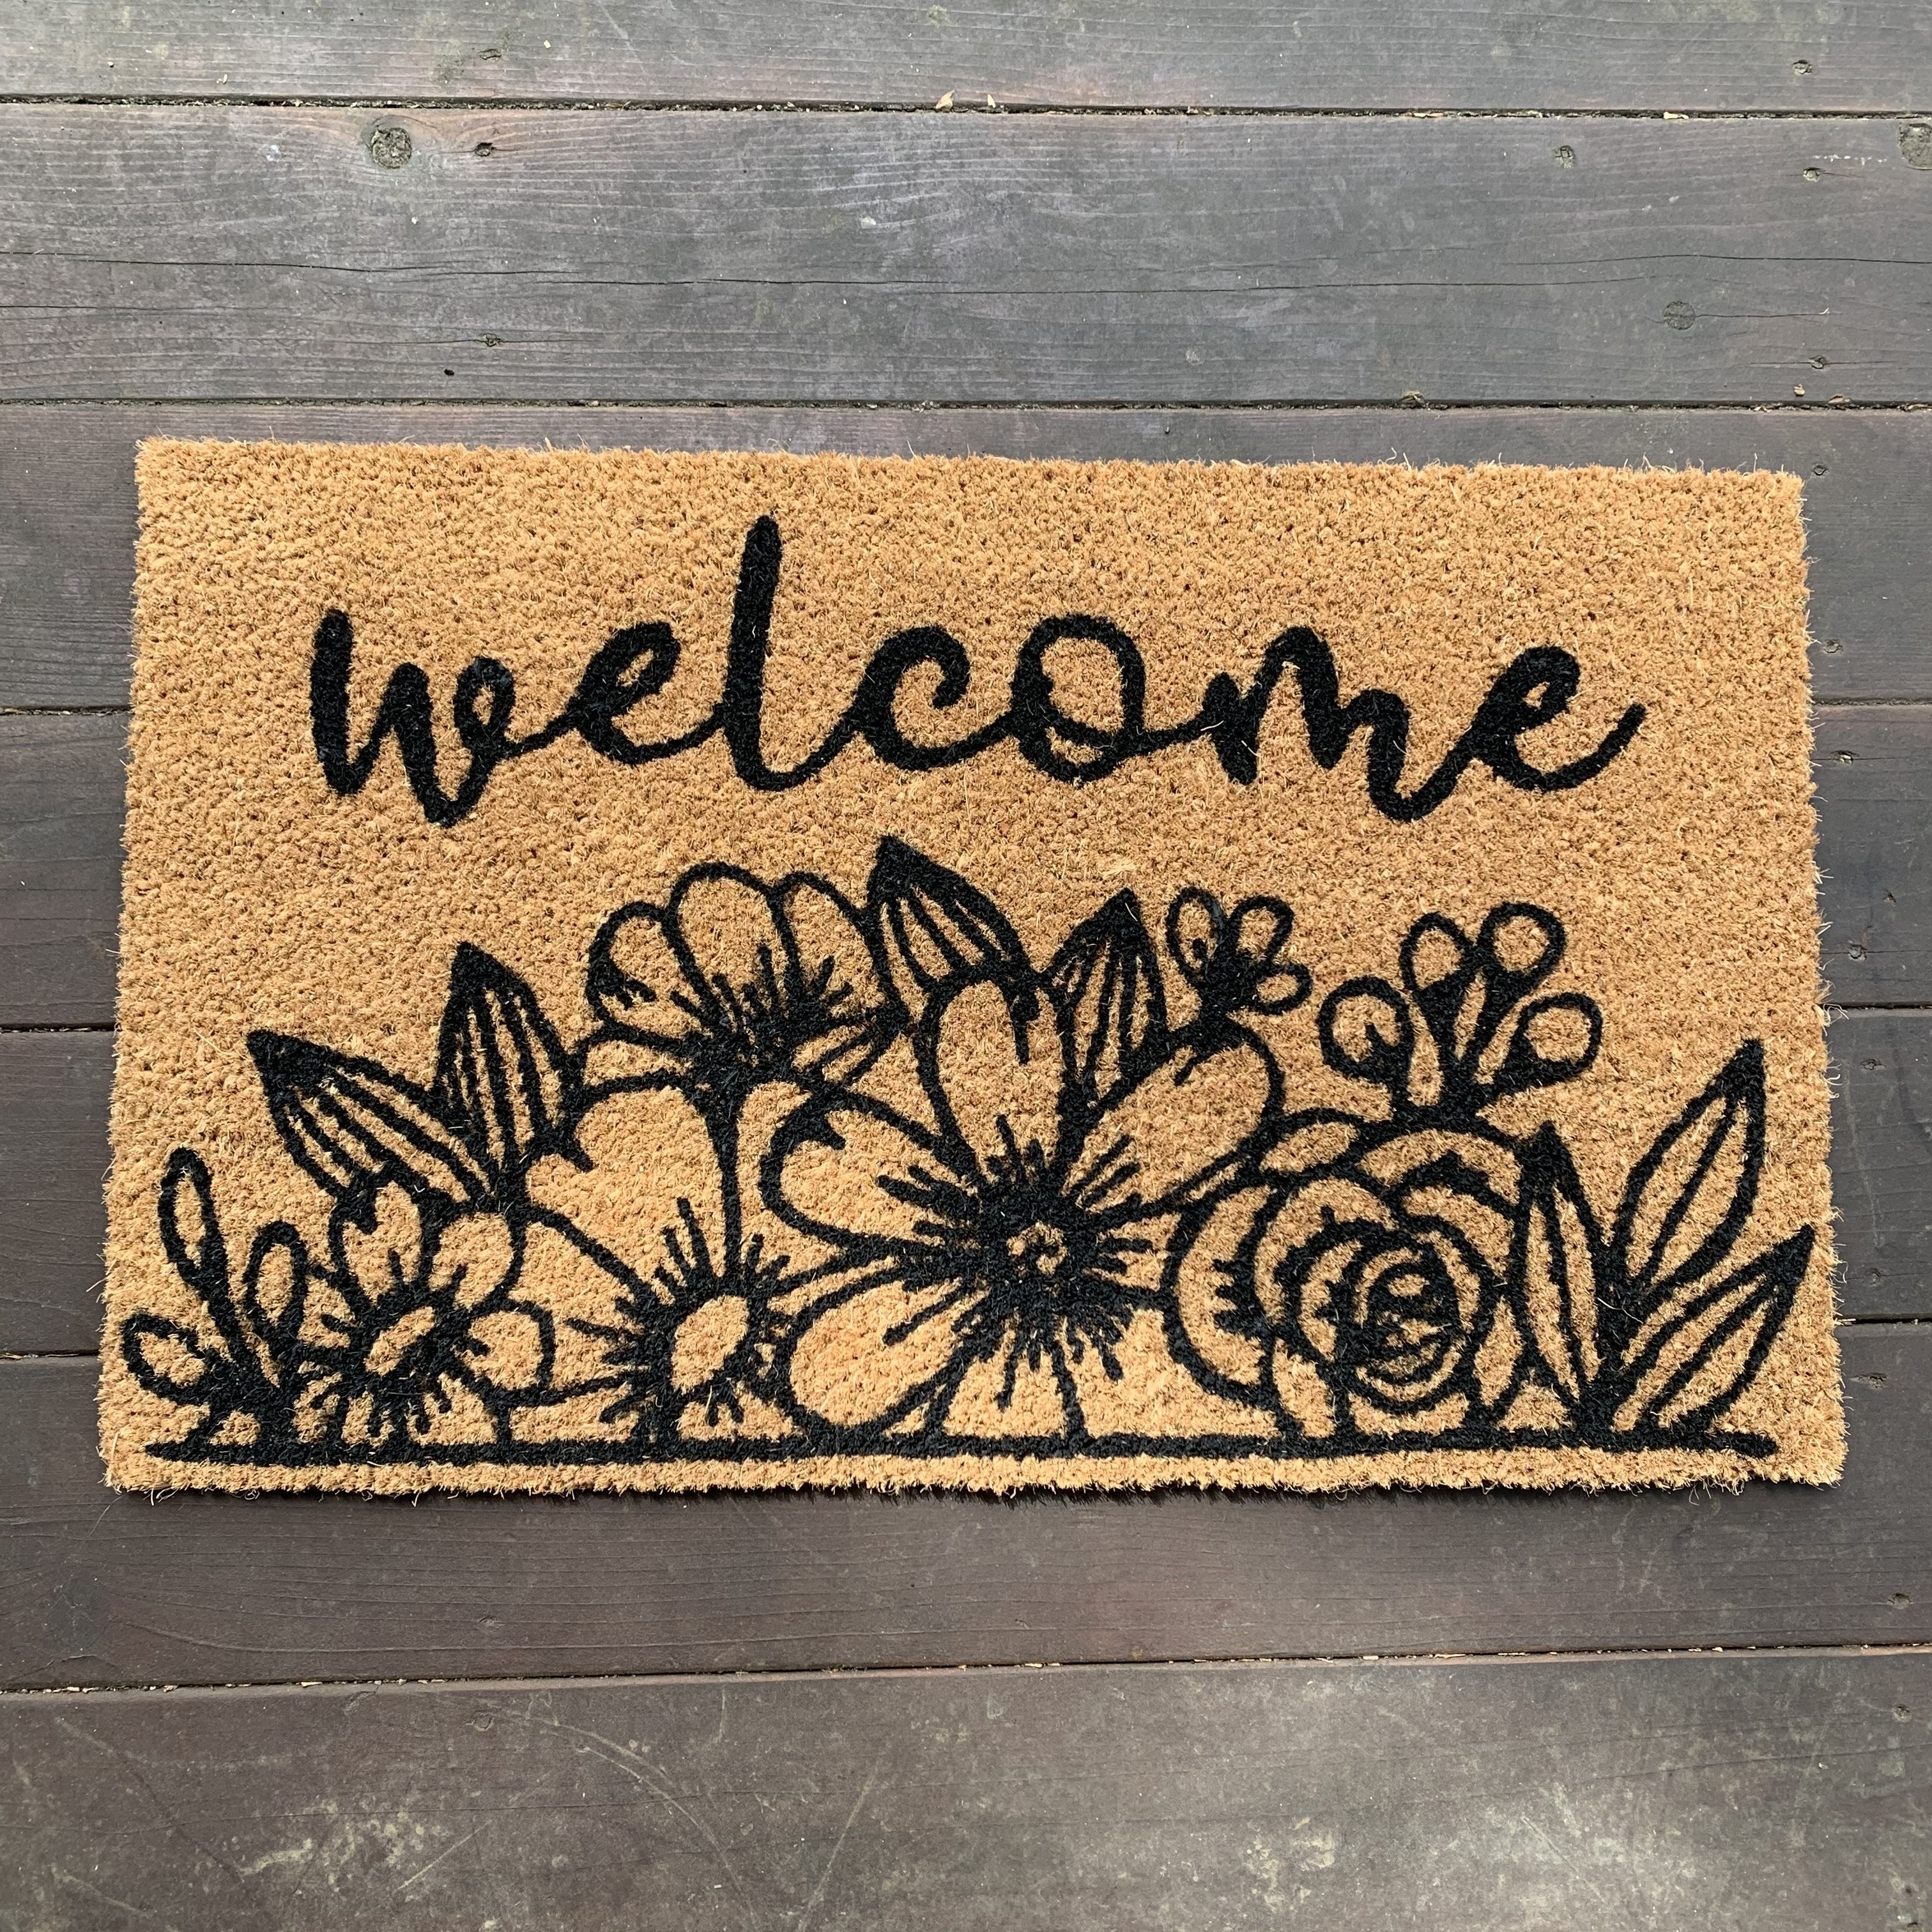 DIY Doormat Kit, Paint Your Own Welcome Mat